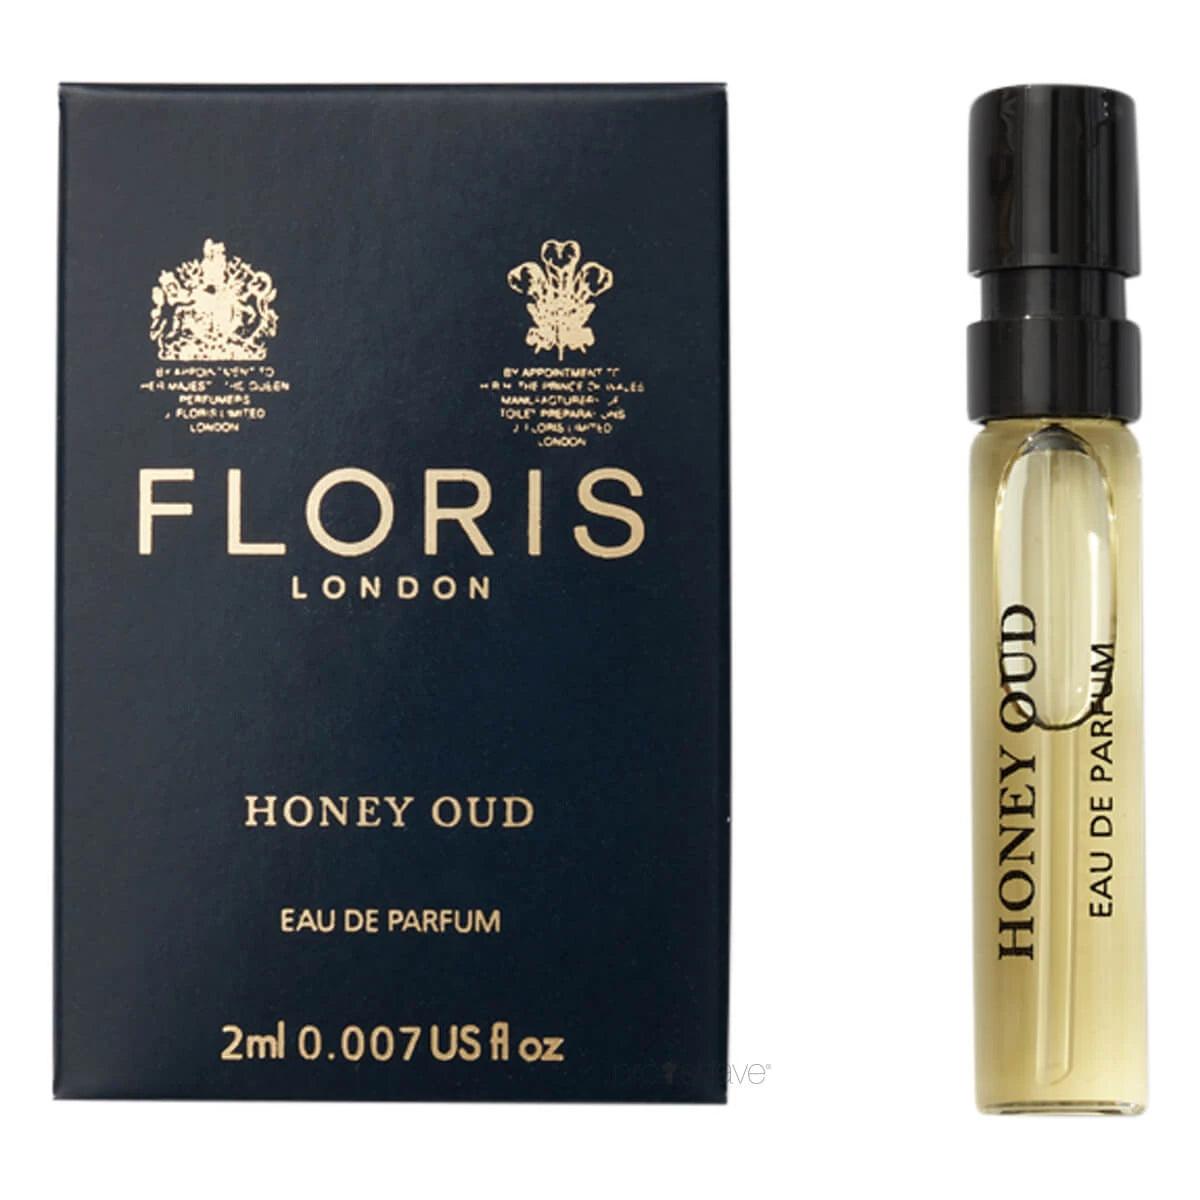 Floris Honey Oud, Eau de Parfum | Parfyme | Floris London | JK SHOP | JK Barber og herre frisør | Lavepriser | Best